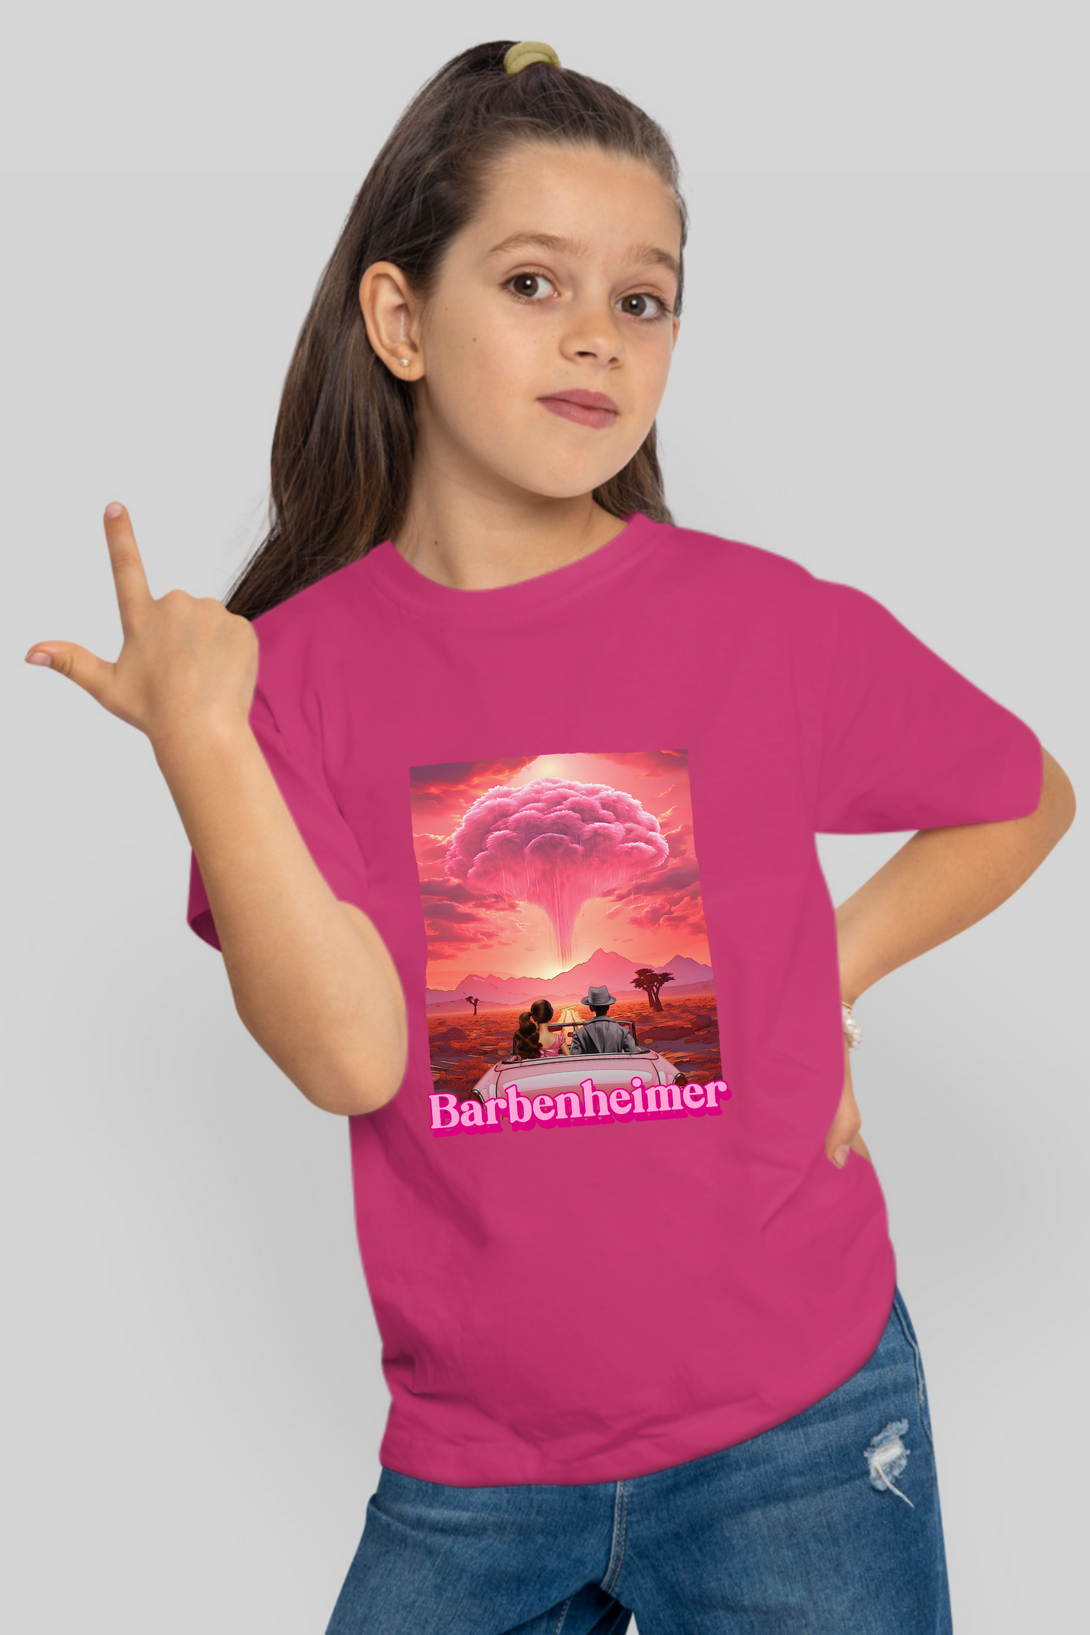 Barbienheimer Printed T-Shirt For Girl - WowWaves - 5